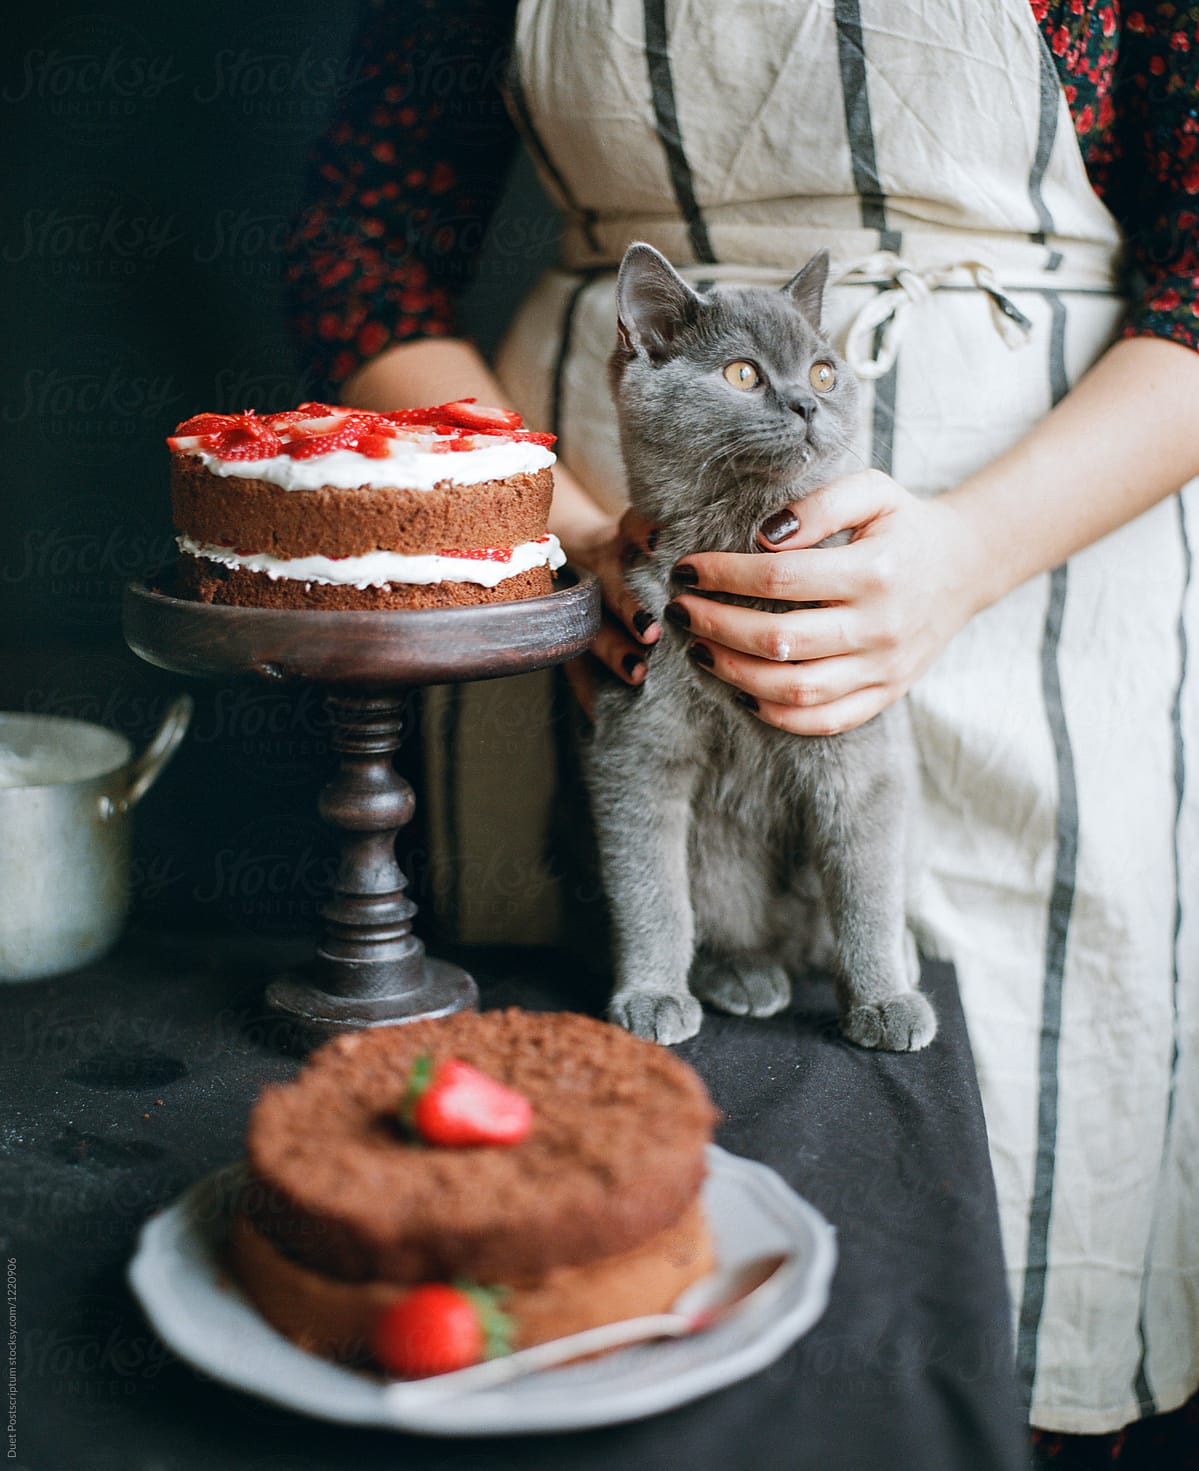 A cat sitting near a cake